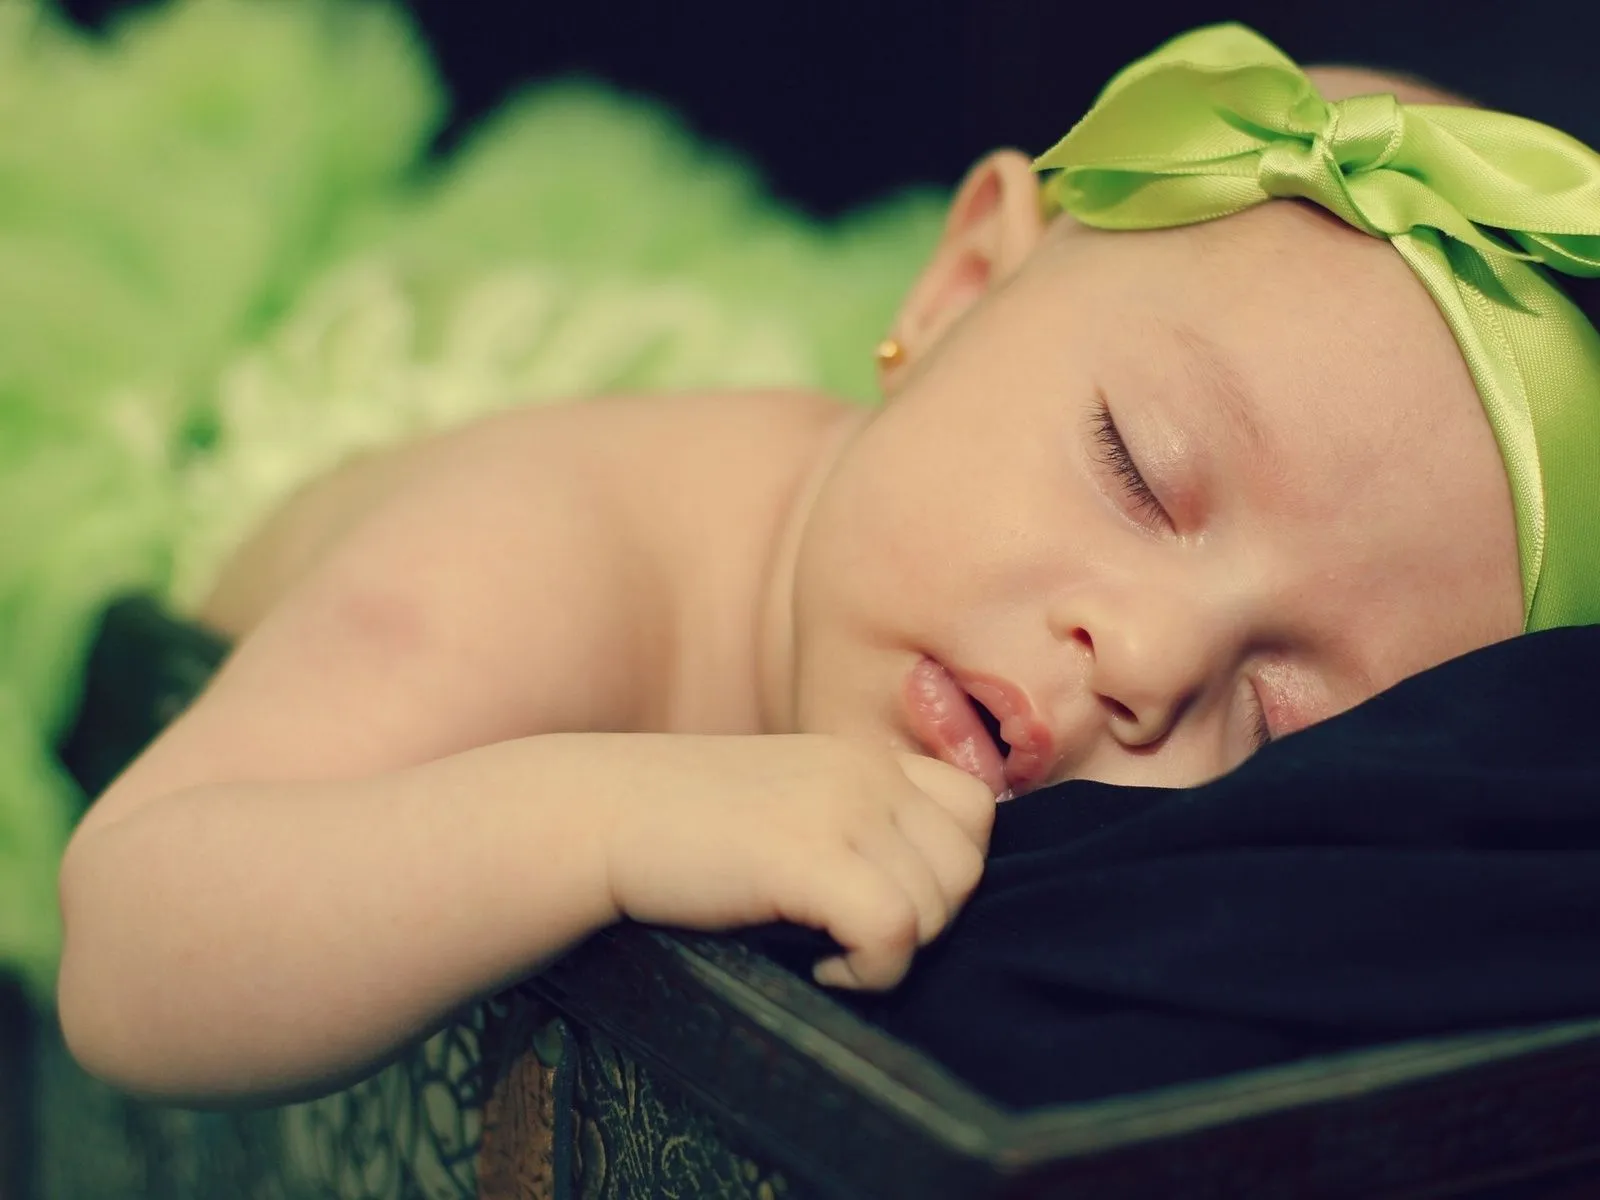 Fotos de bebe durmiendo para facebook ~ Mejores Fotos del Mundo ...